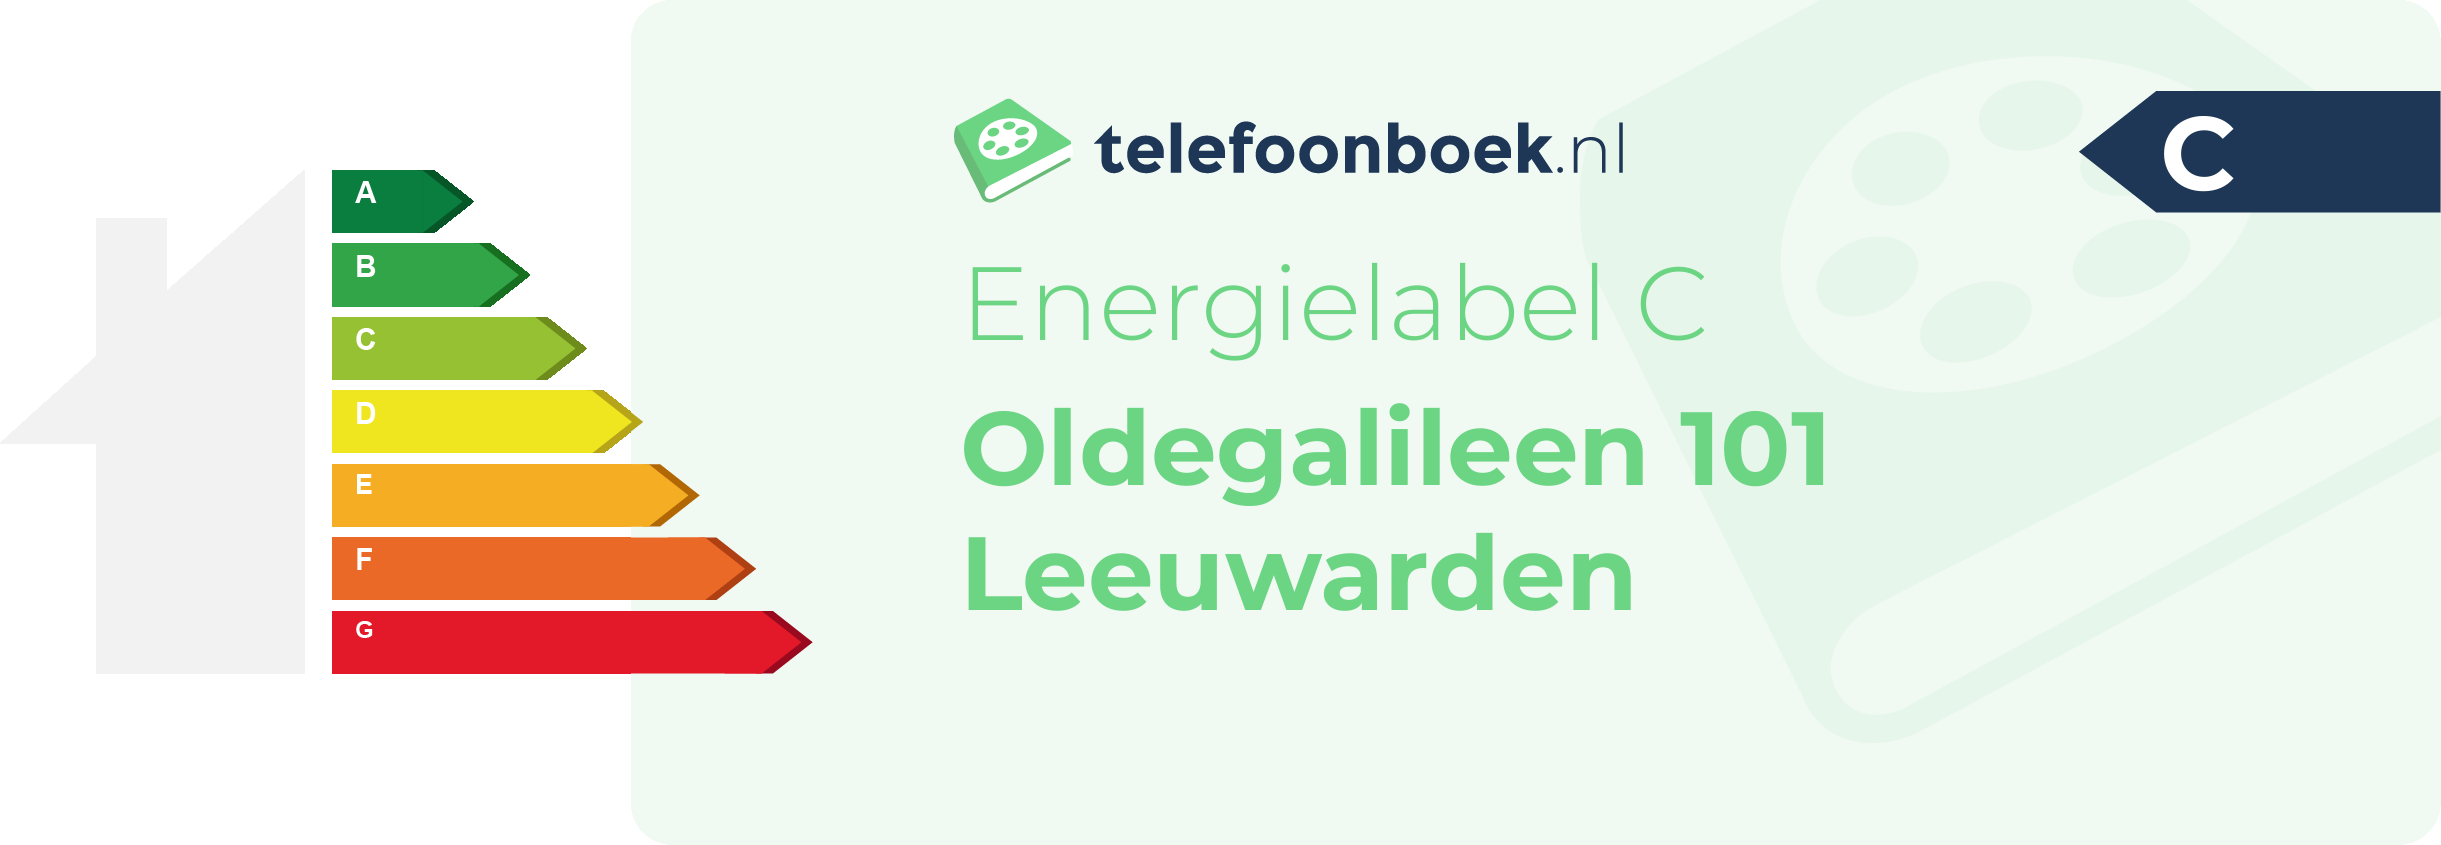 Energielabel Oldegalileen 101 Leeuwarden